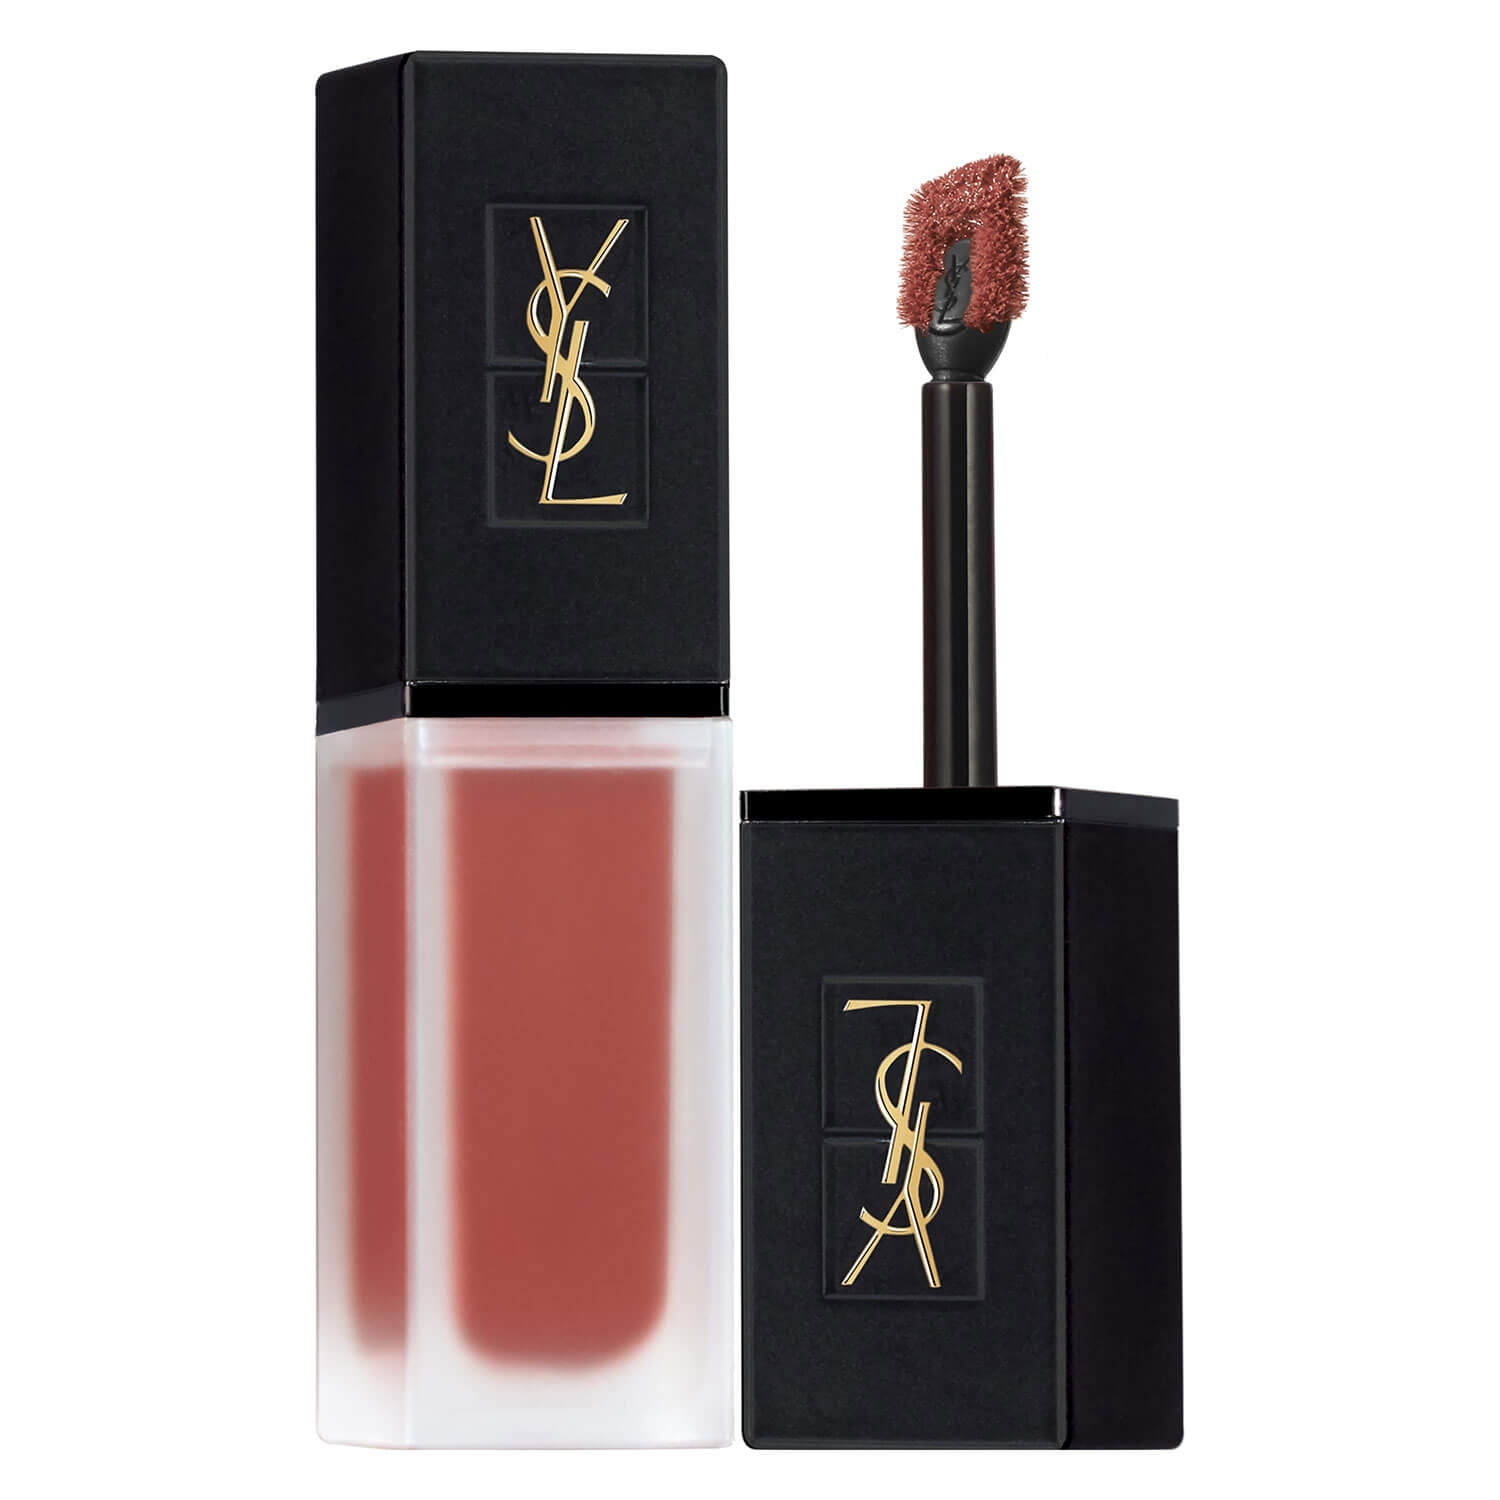 Produktbild von Tatouage Couture - Velvet Cream Nude Emblem 216